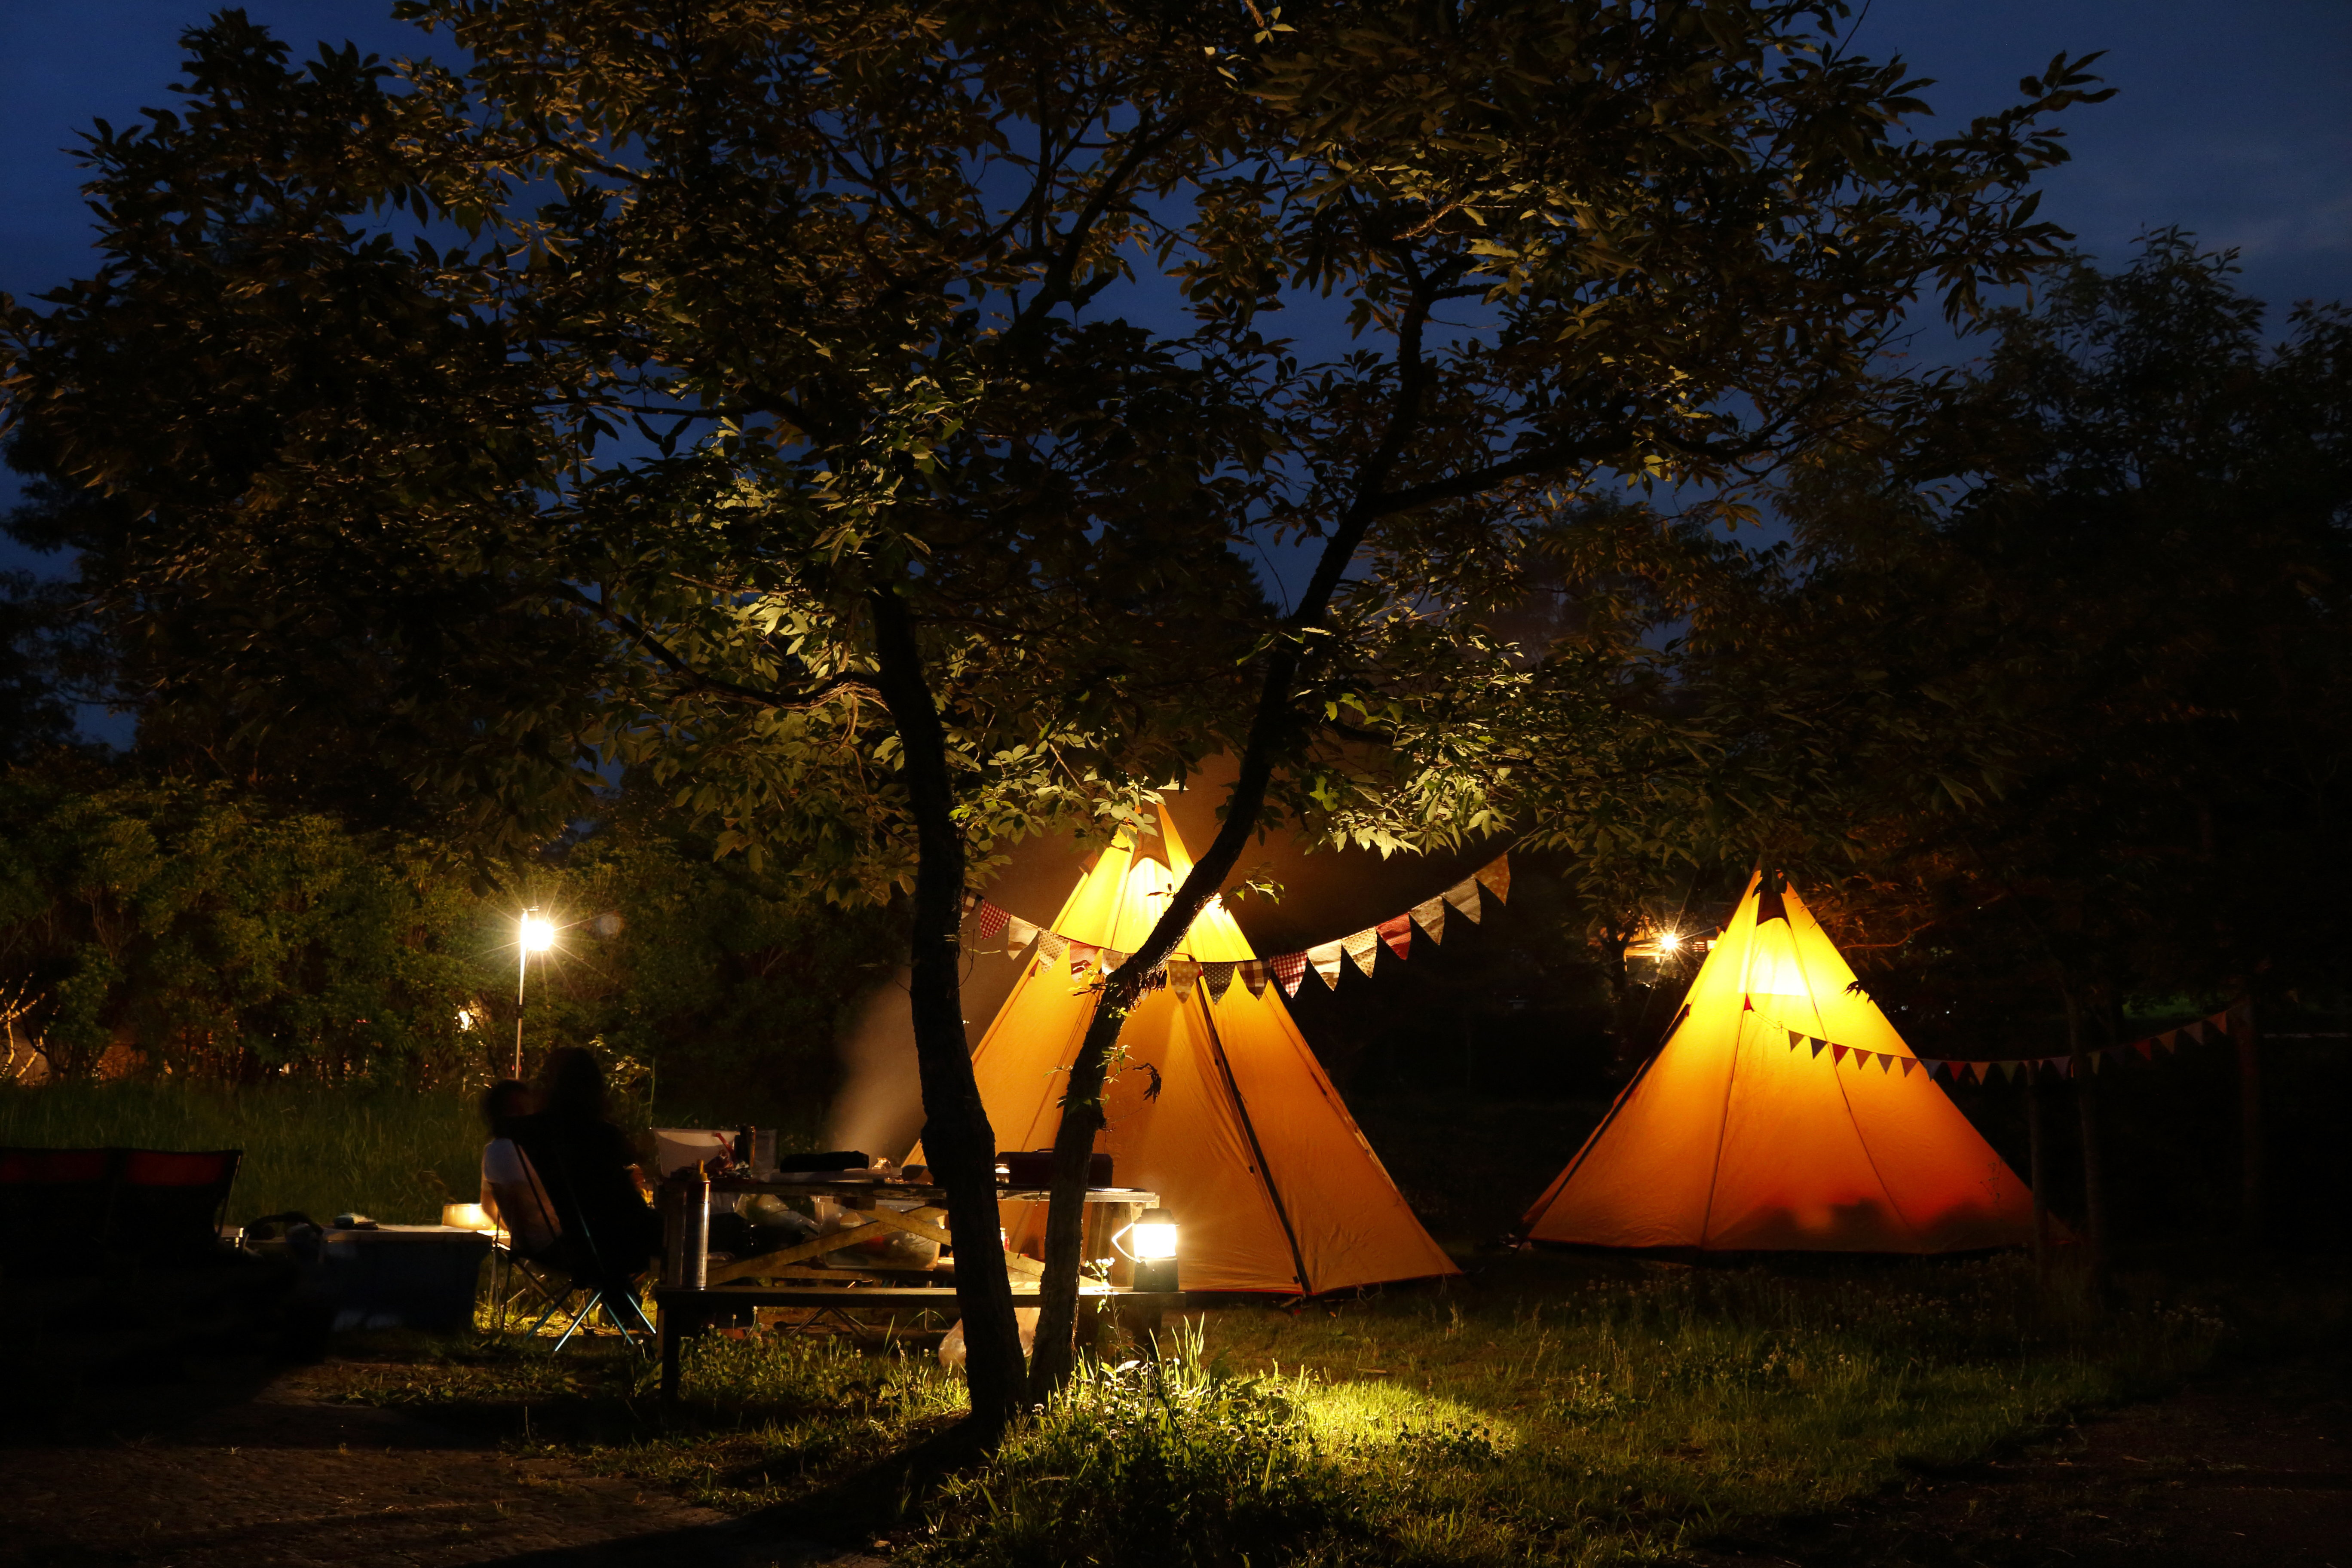 Camping Lanterns